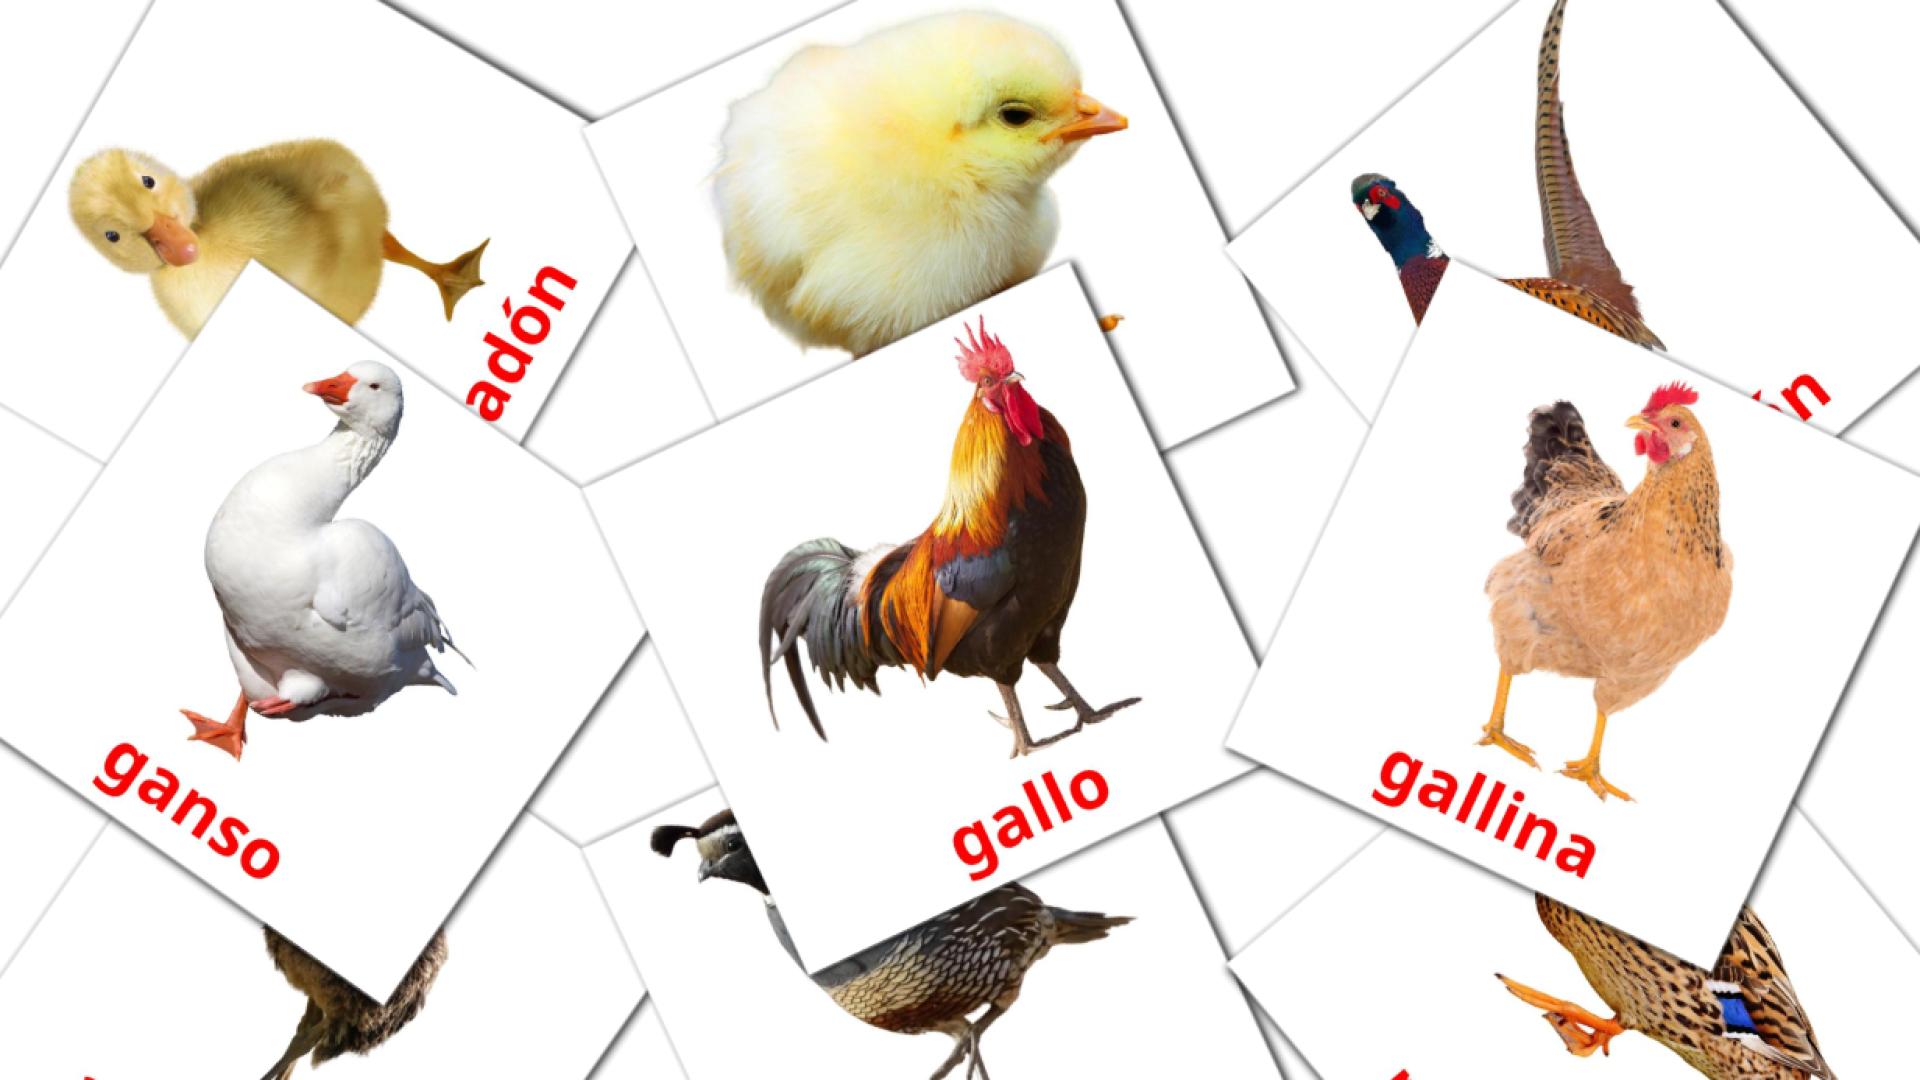 11 Bildkarten für Aves de granja